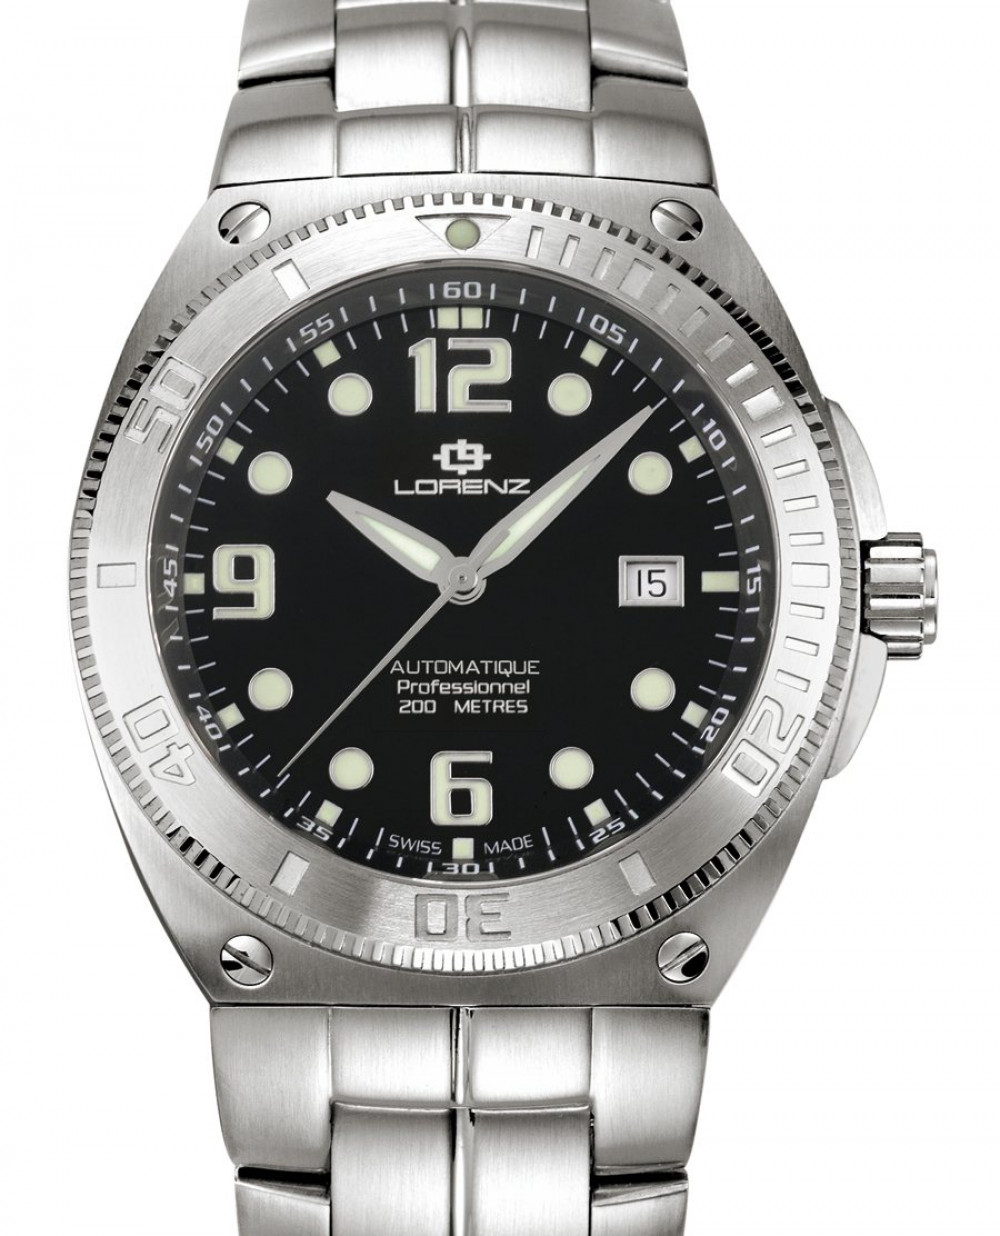 Zegarek firmy Lorenz, model Aquitania Diver